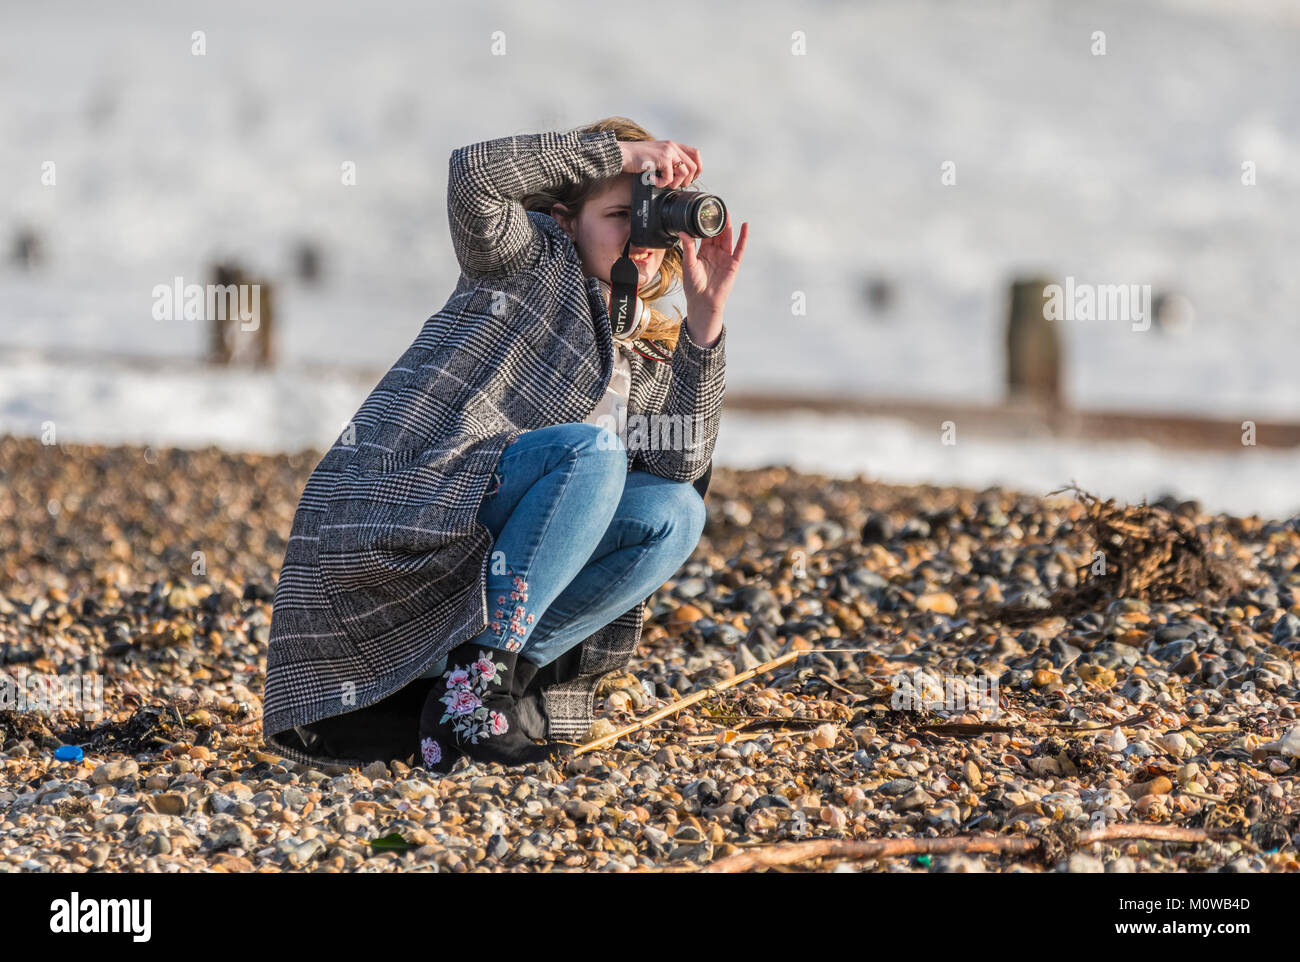 Donna giovane fotografo femminile accovacciato in basso per scattare delle foto su una spiaggia. Foto Stock